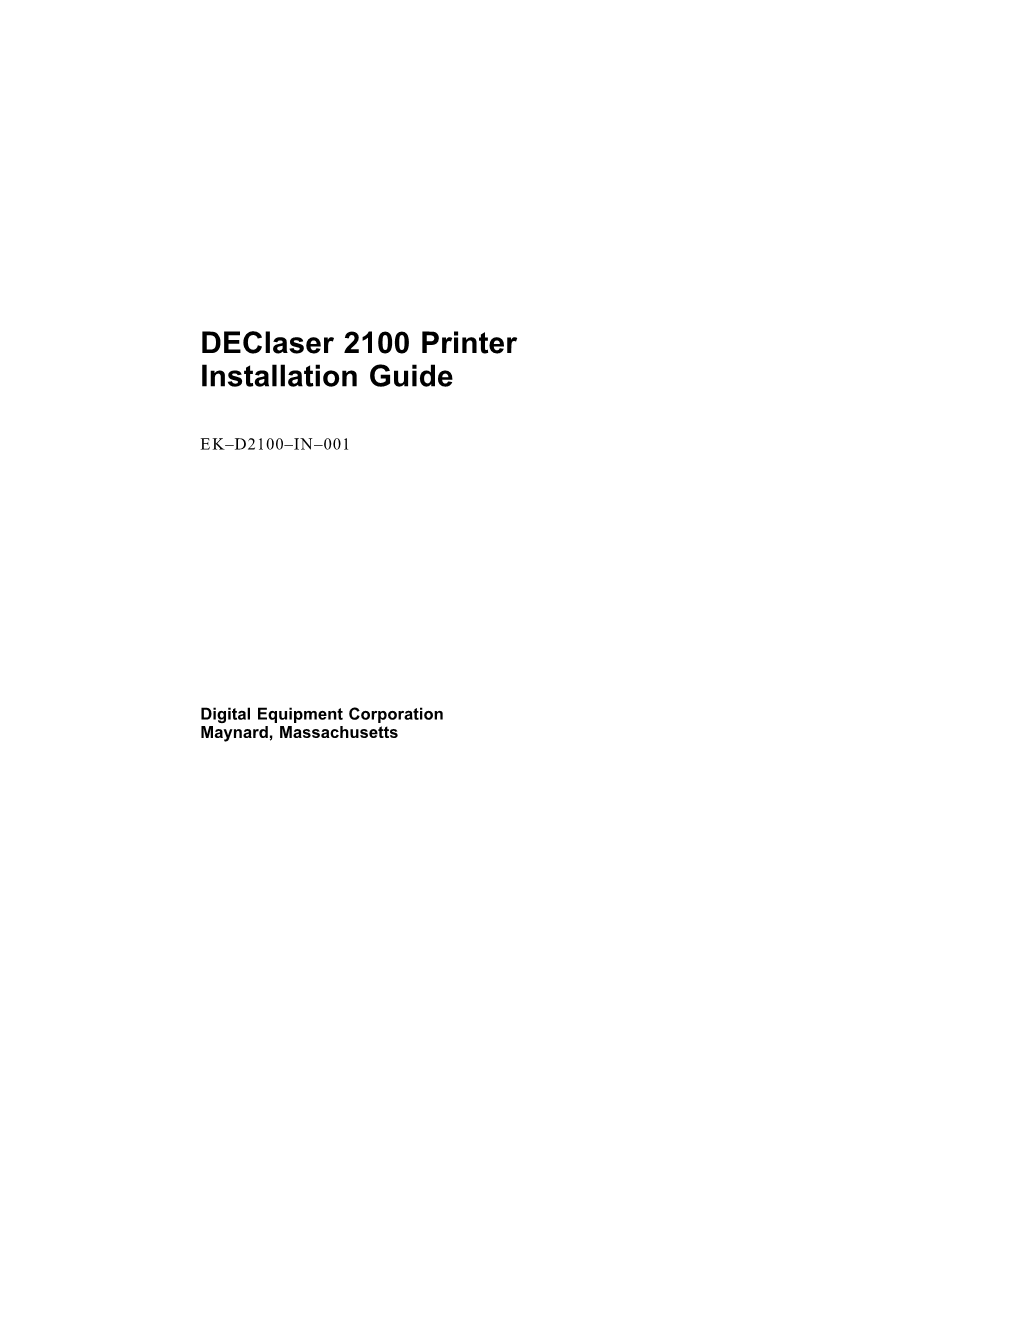 Declaser 2100 Printer Installation Guide